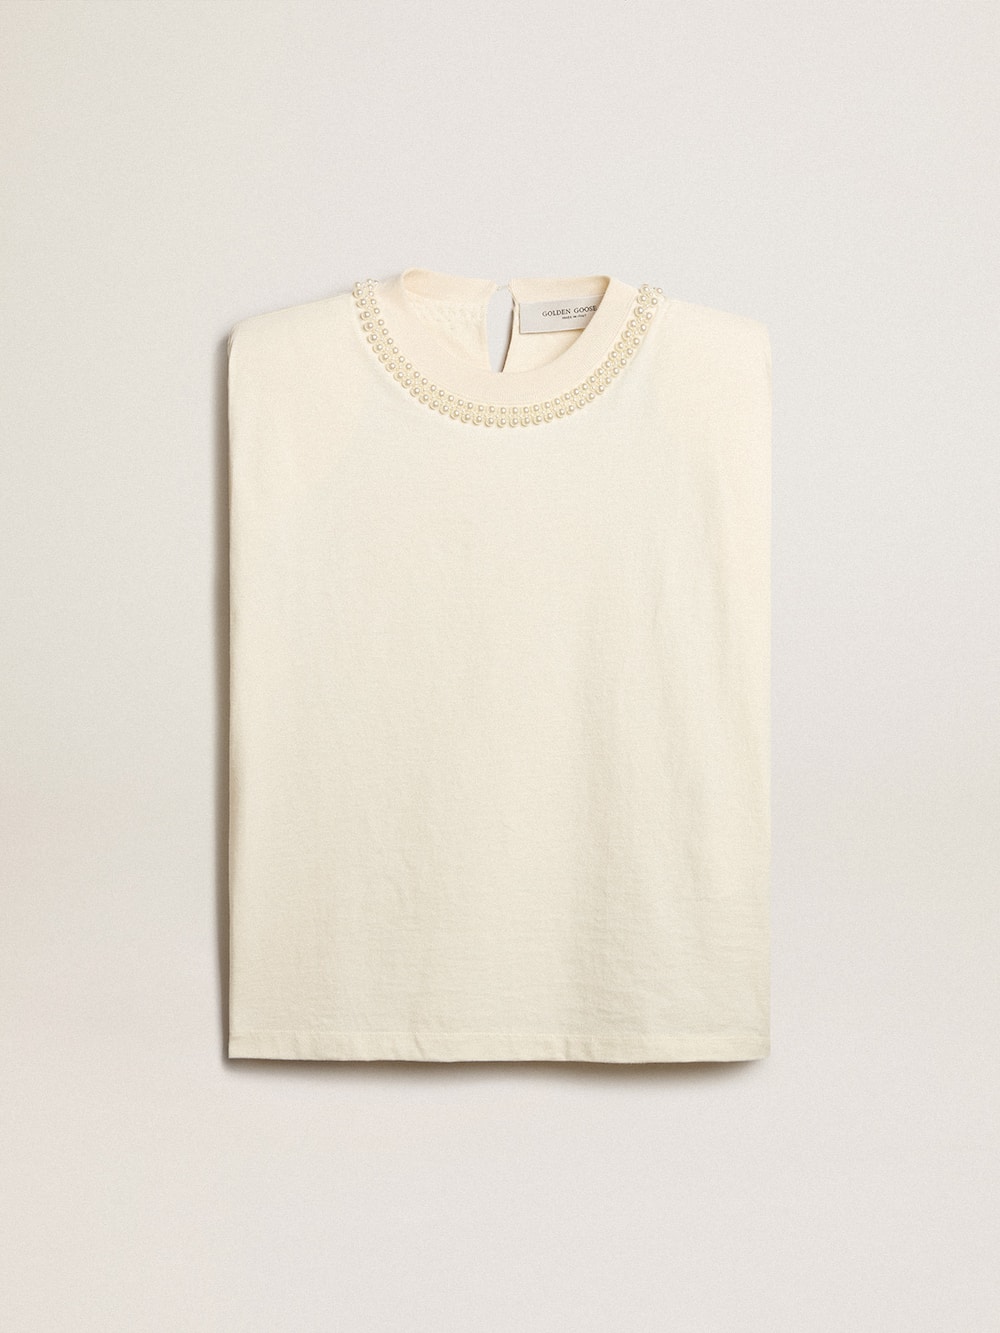 Golden Goose - T-shirt smanicata color bianco vissuto con ricamo in perle in 